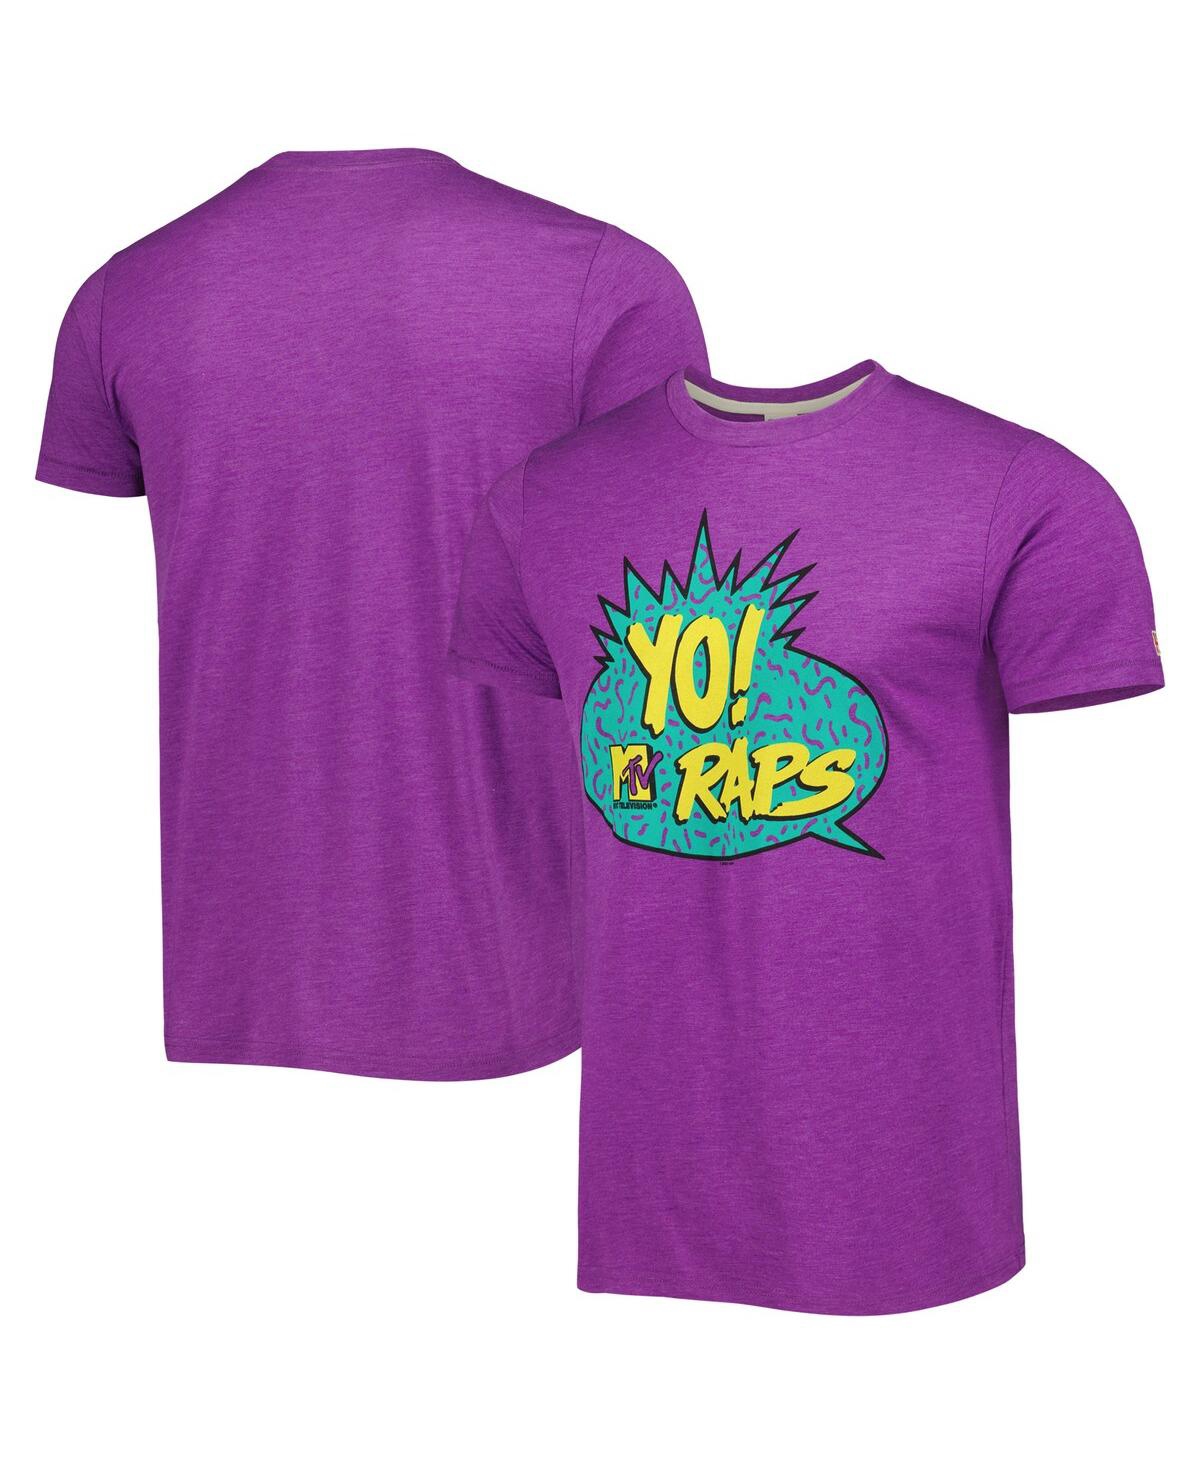 Shop Homage Men's And Women's  Purple Yo! Mtv Raps Tri-blend T-shirt